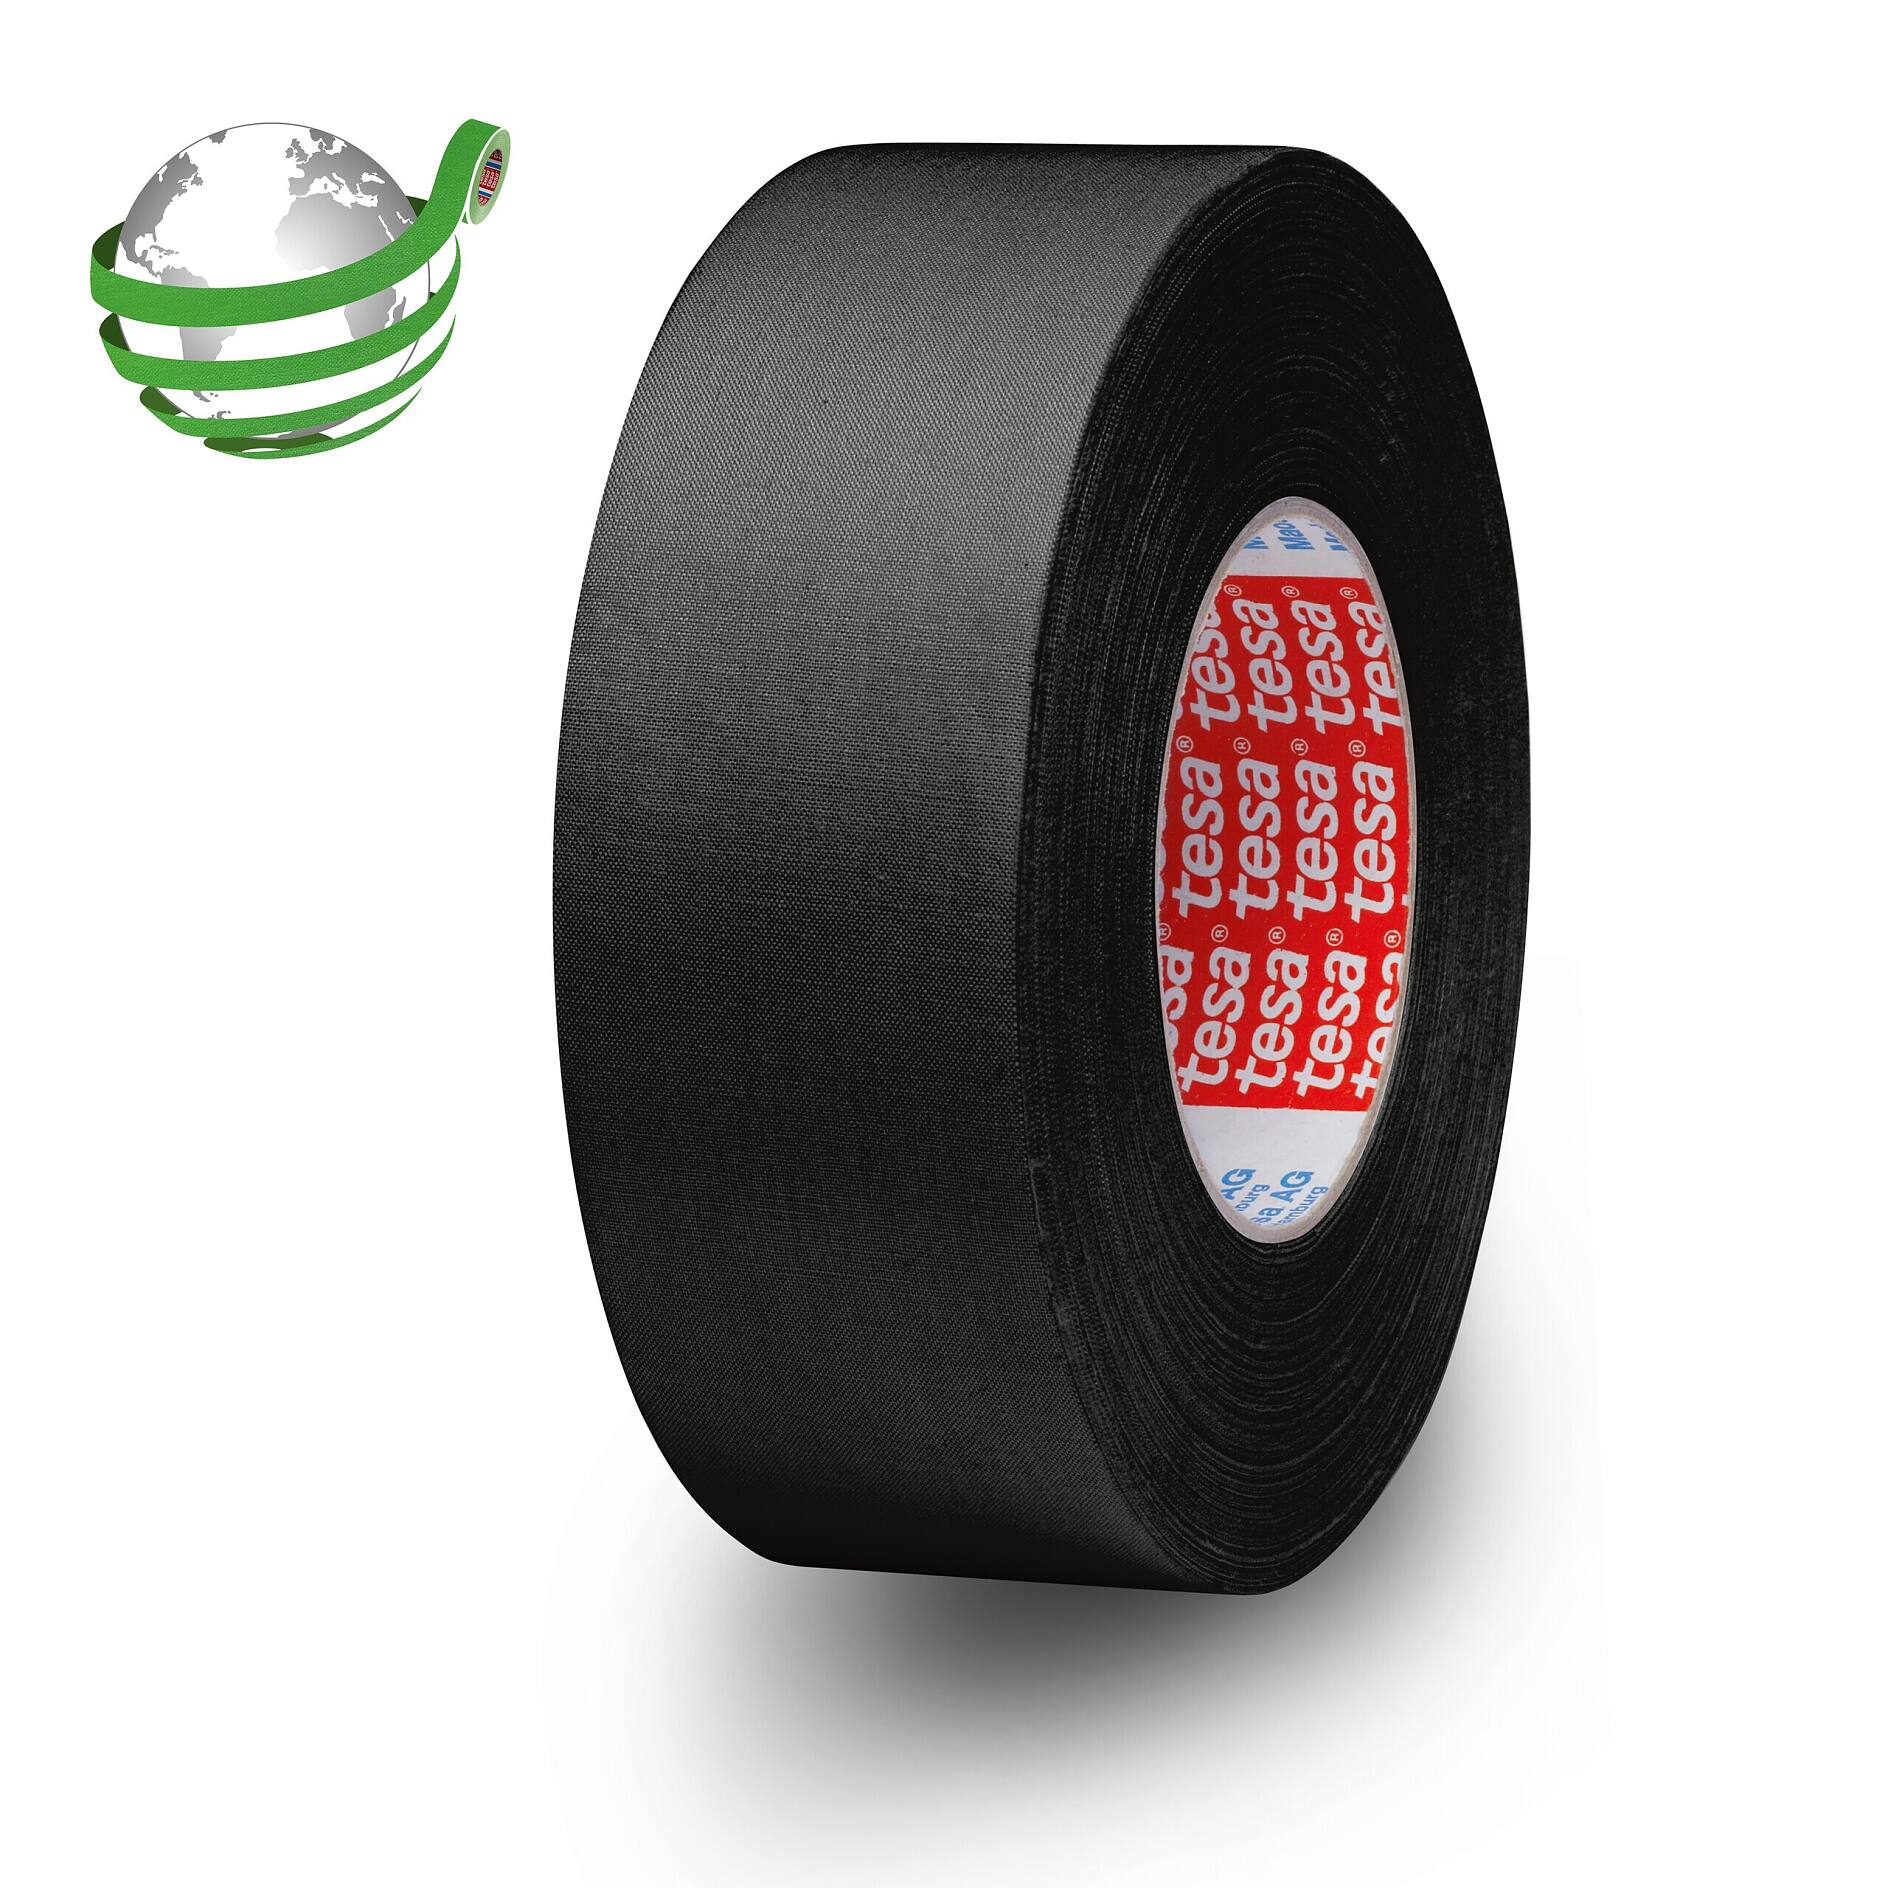 TESA 50577 adhésif aluminium noir mat anti-reflet